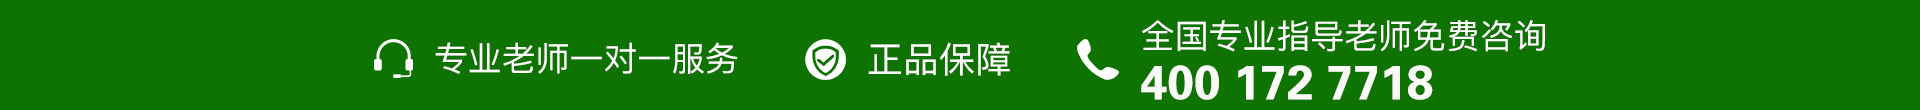 绿色电话-banner图下方-PC - 副本 (3).jpg